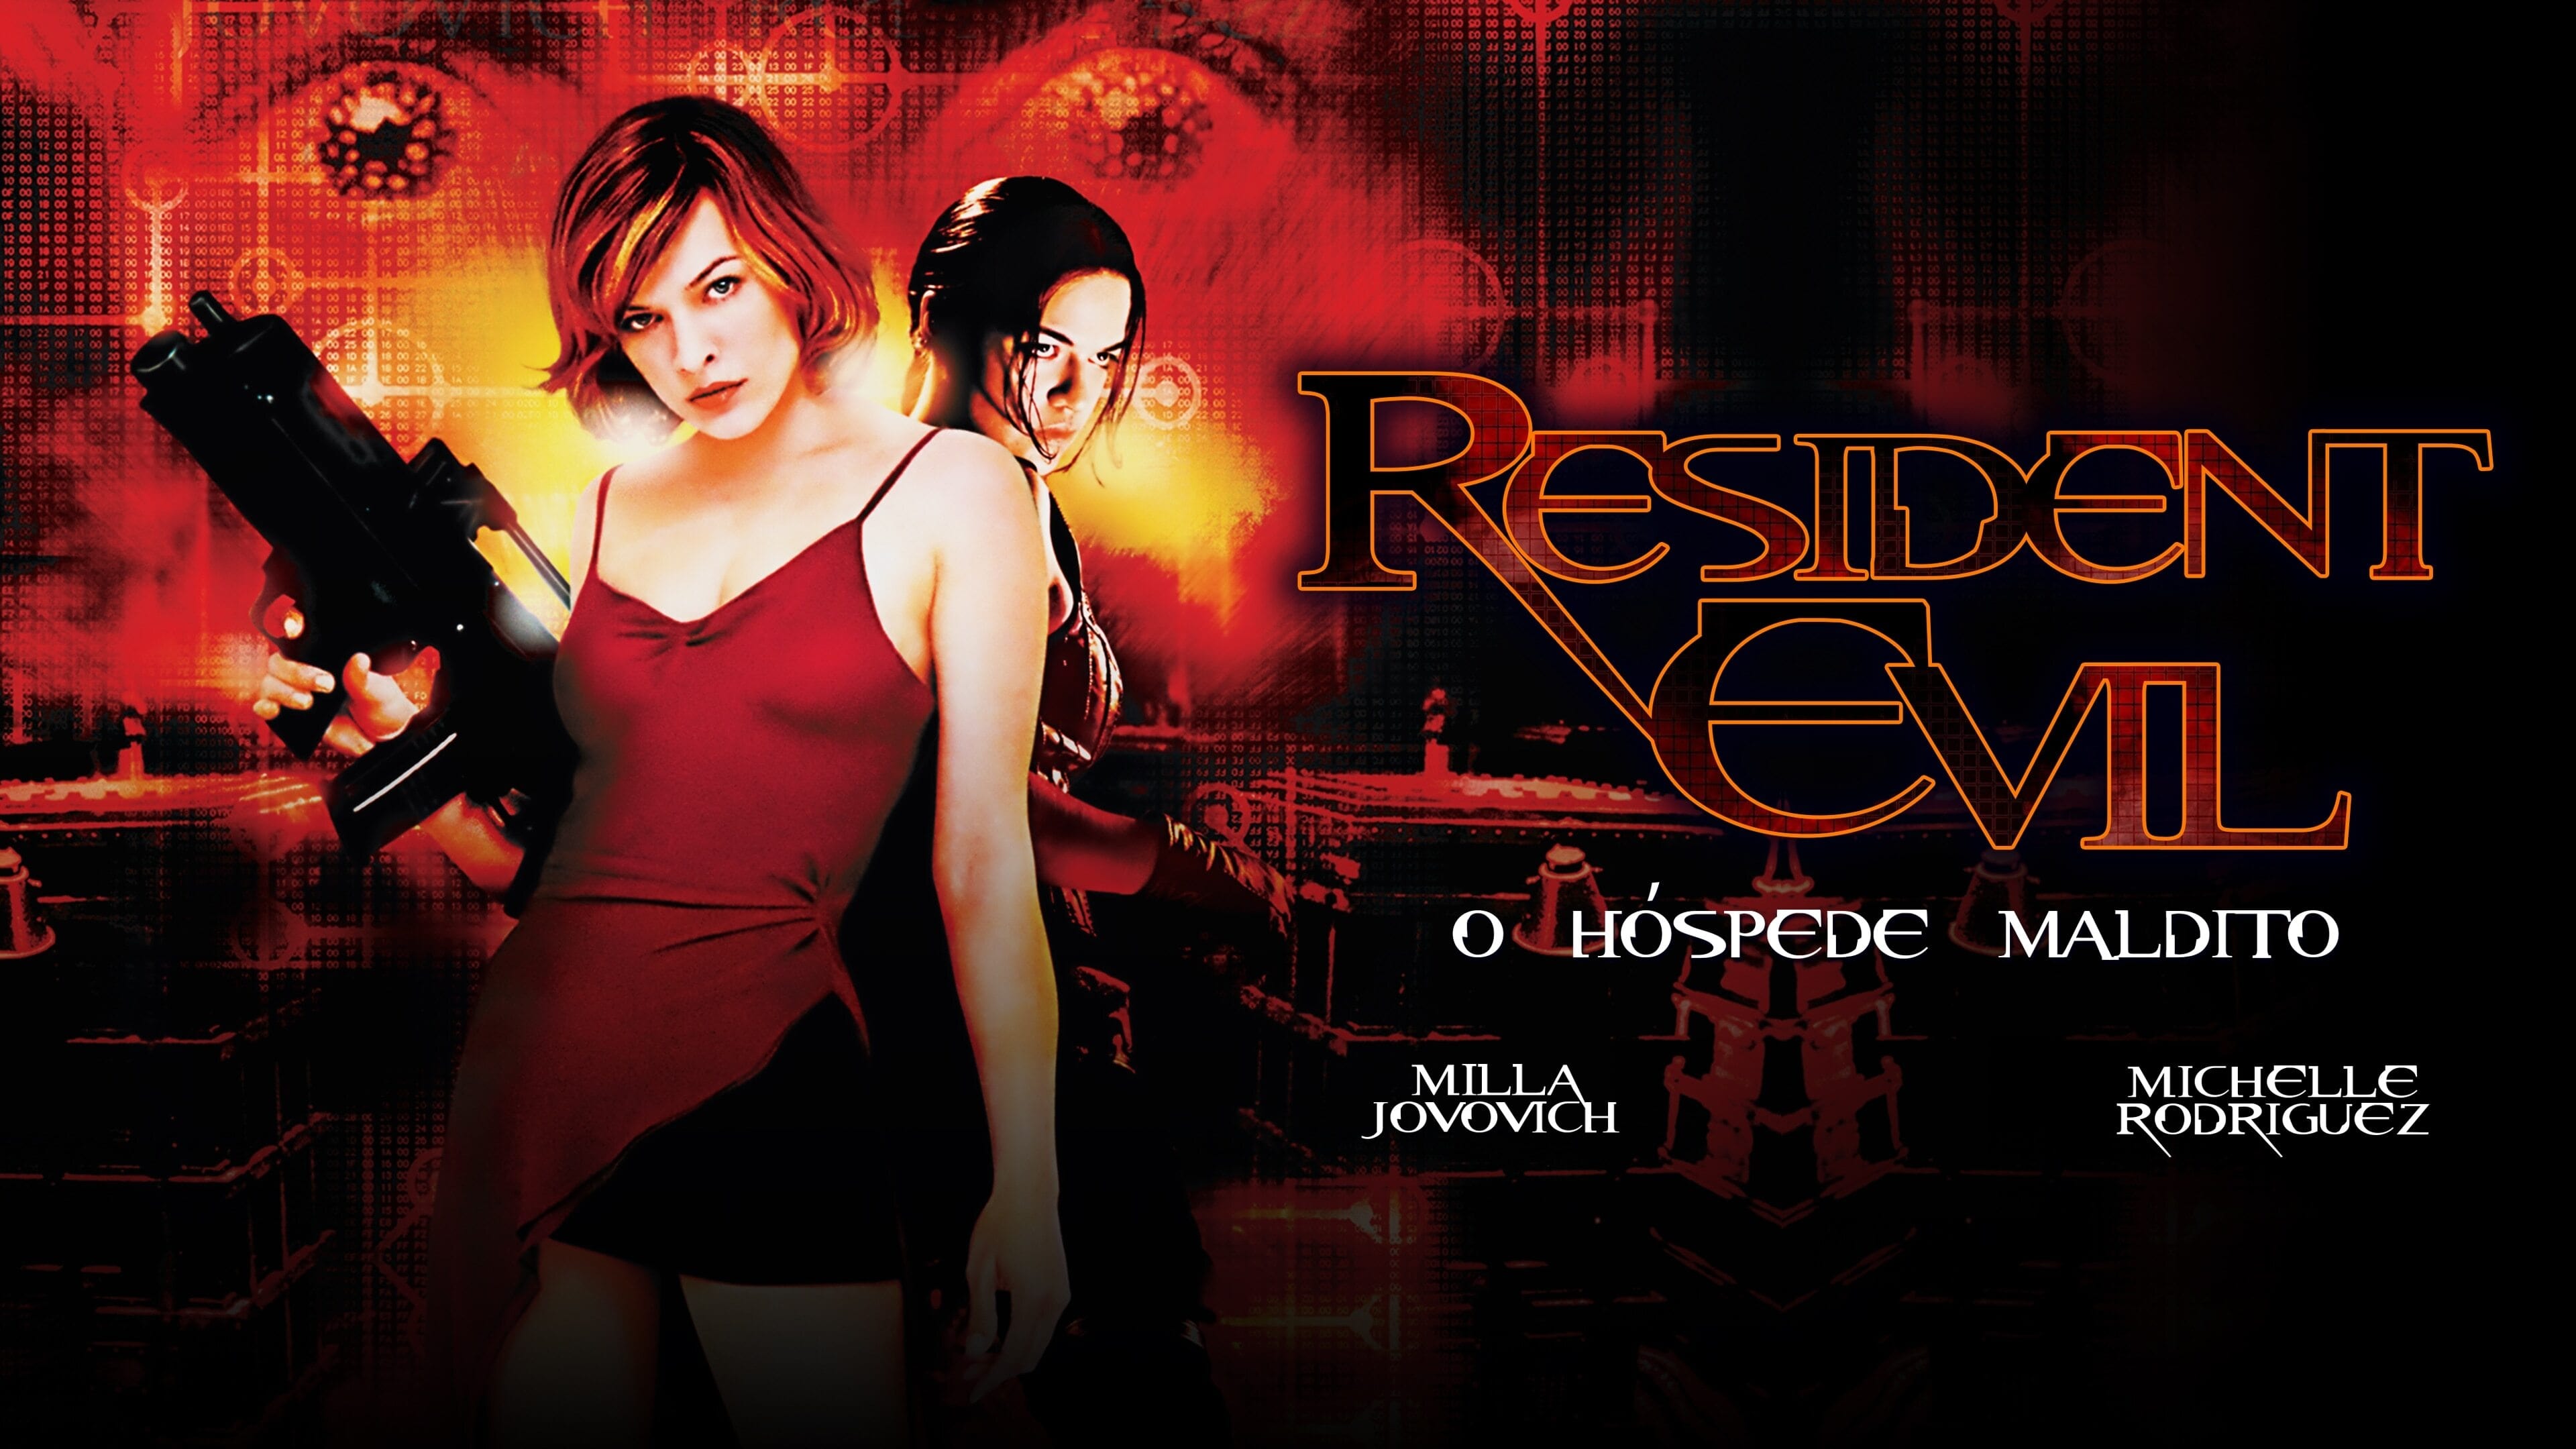 Resident Evil: El huésped maldito